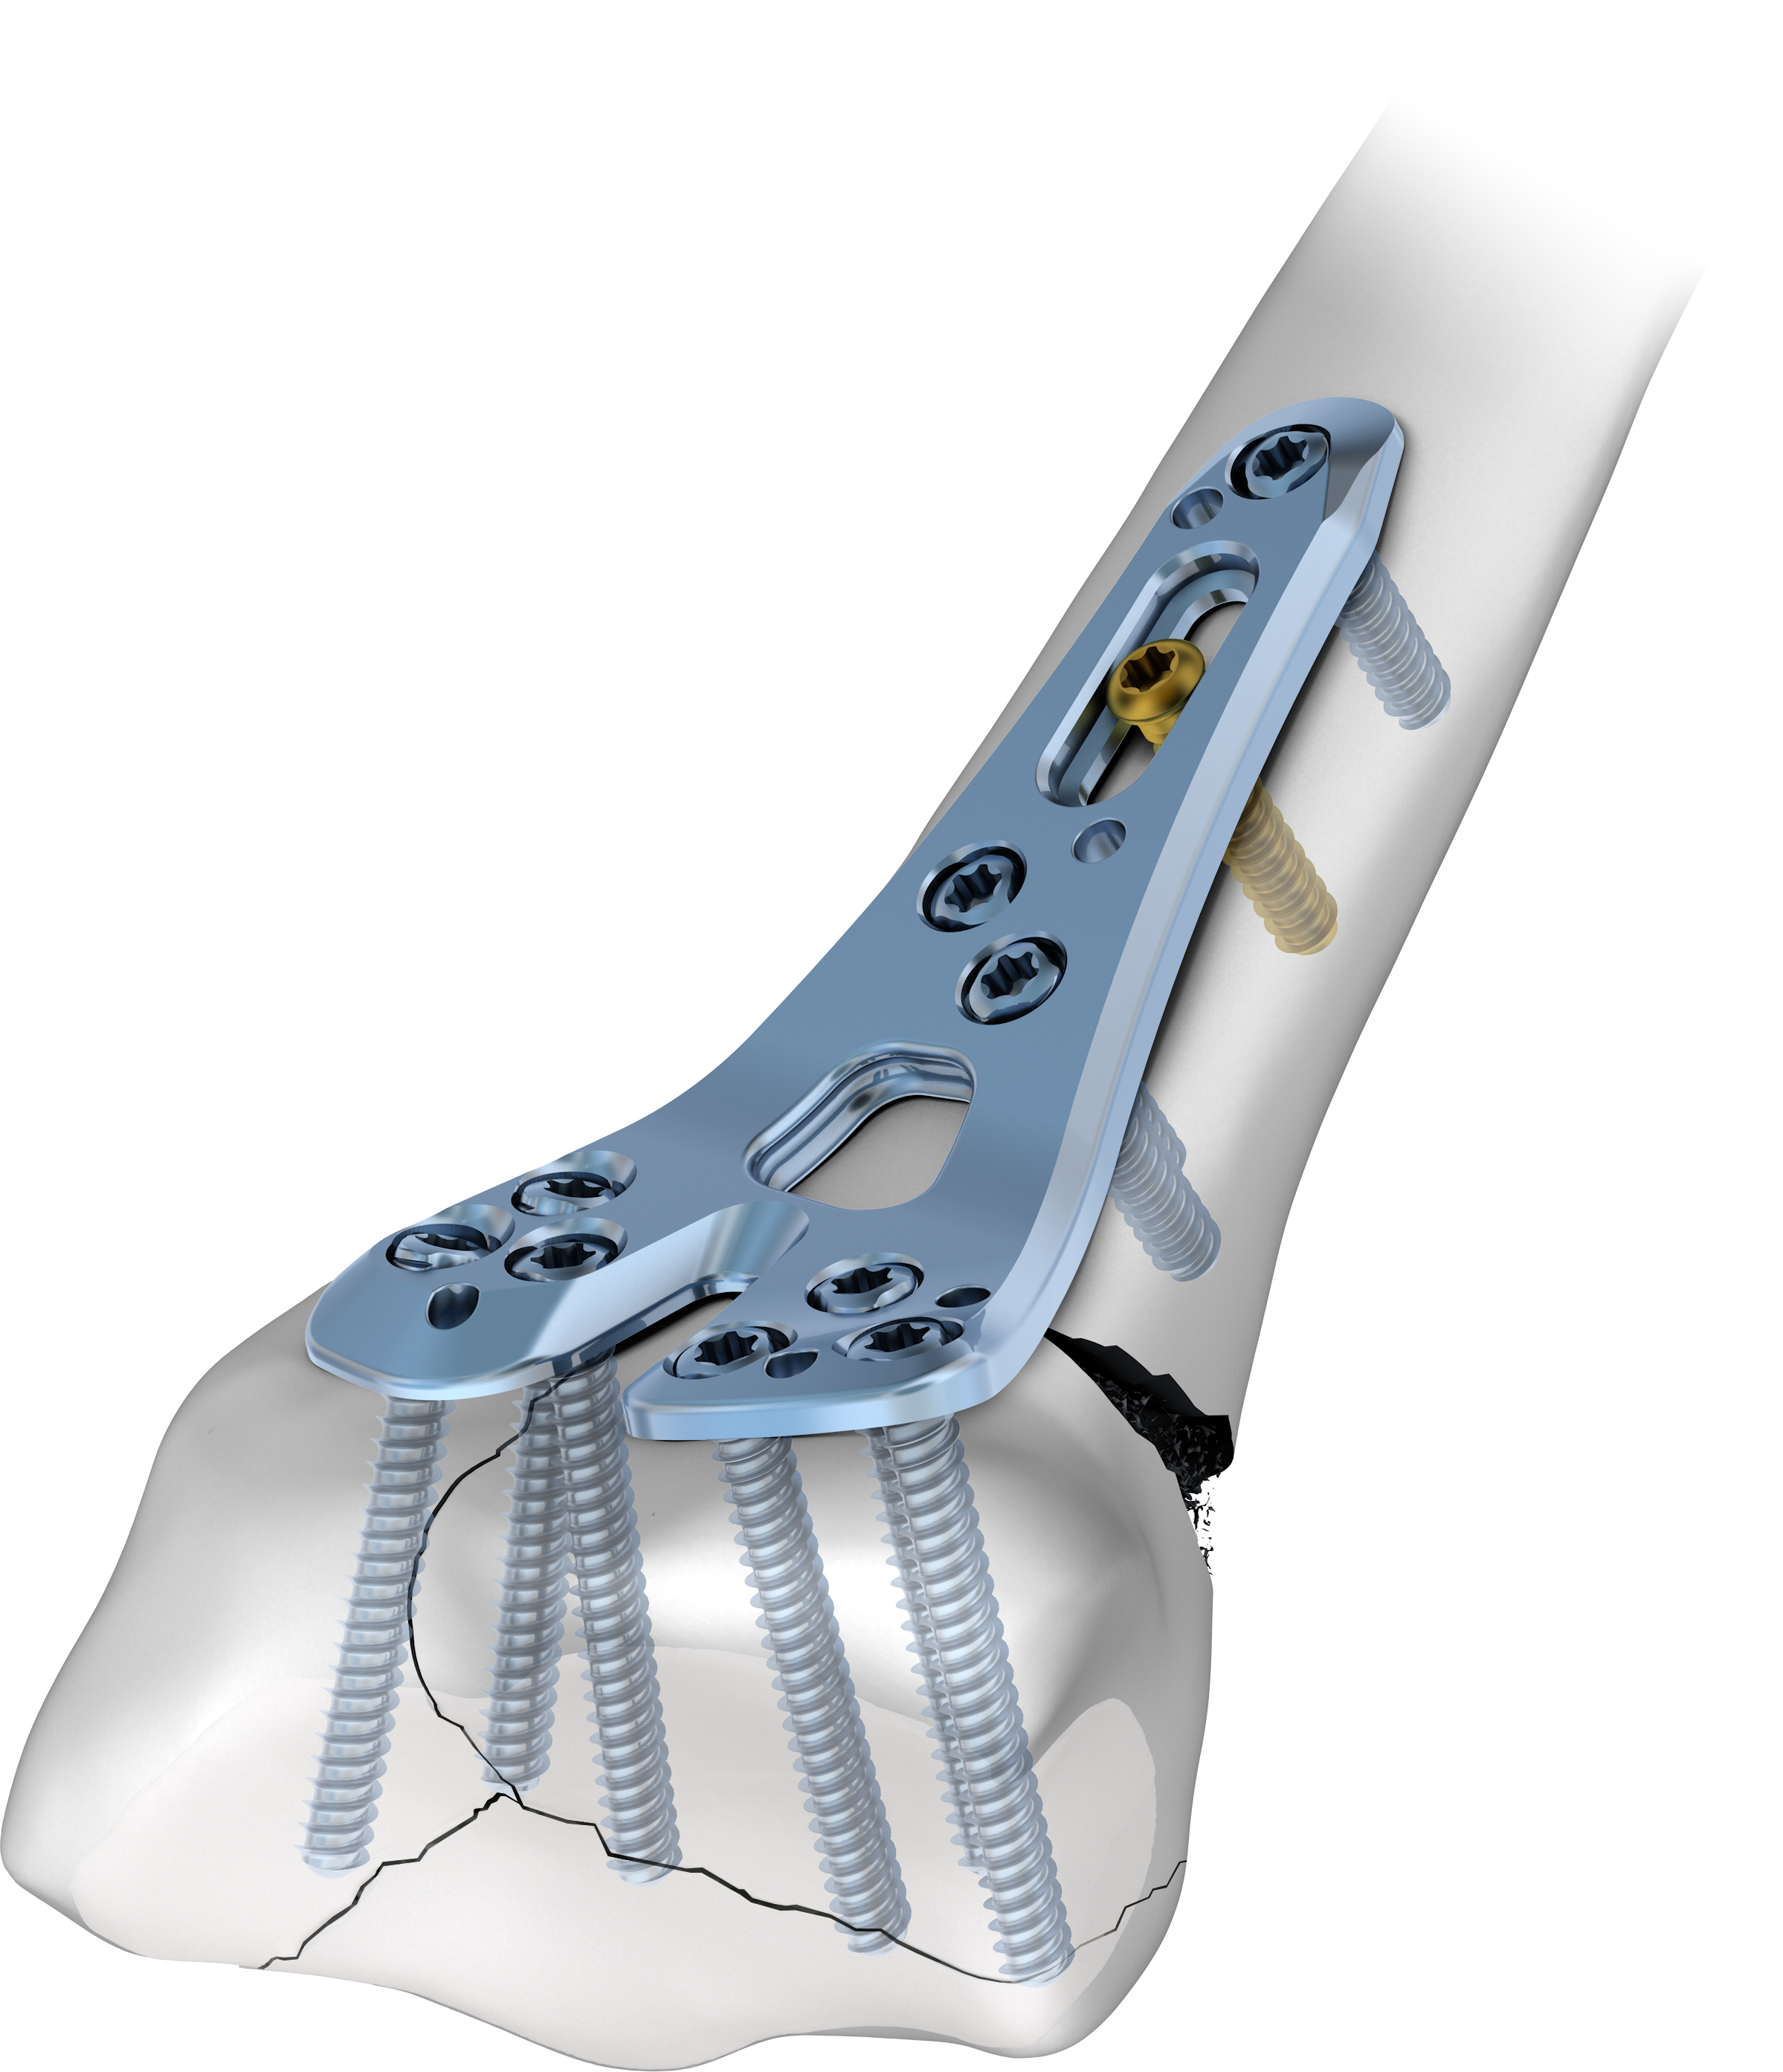 Fissatore ibrido nuovo concetto - Dispositivi ortopedici e postoperatori